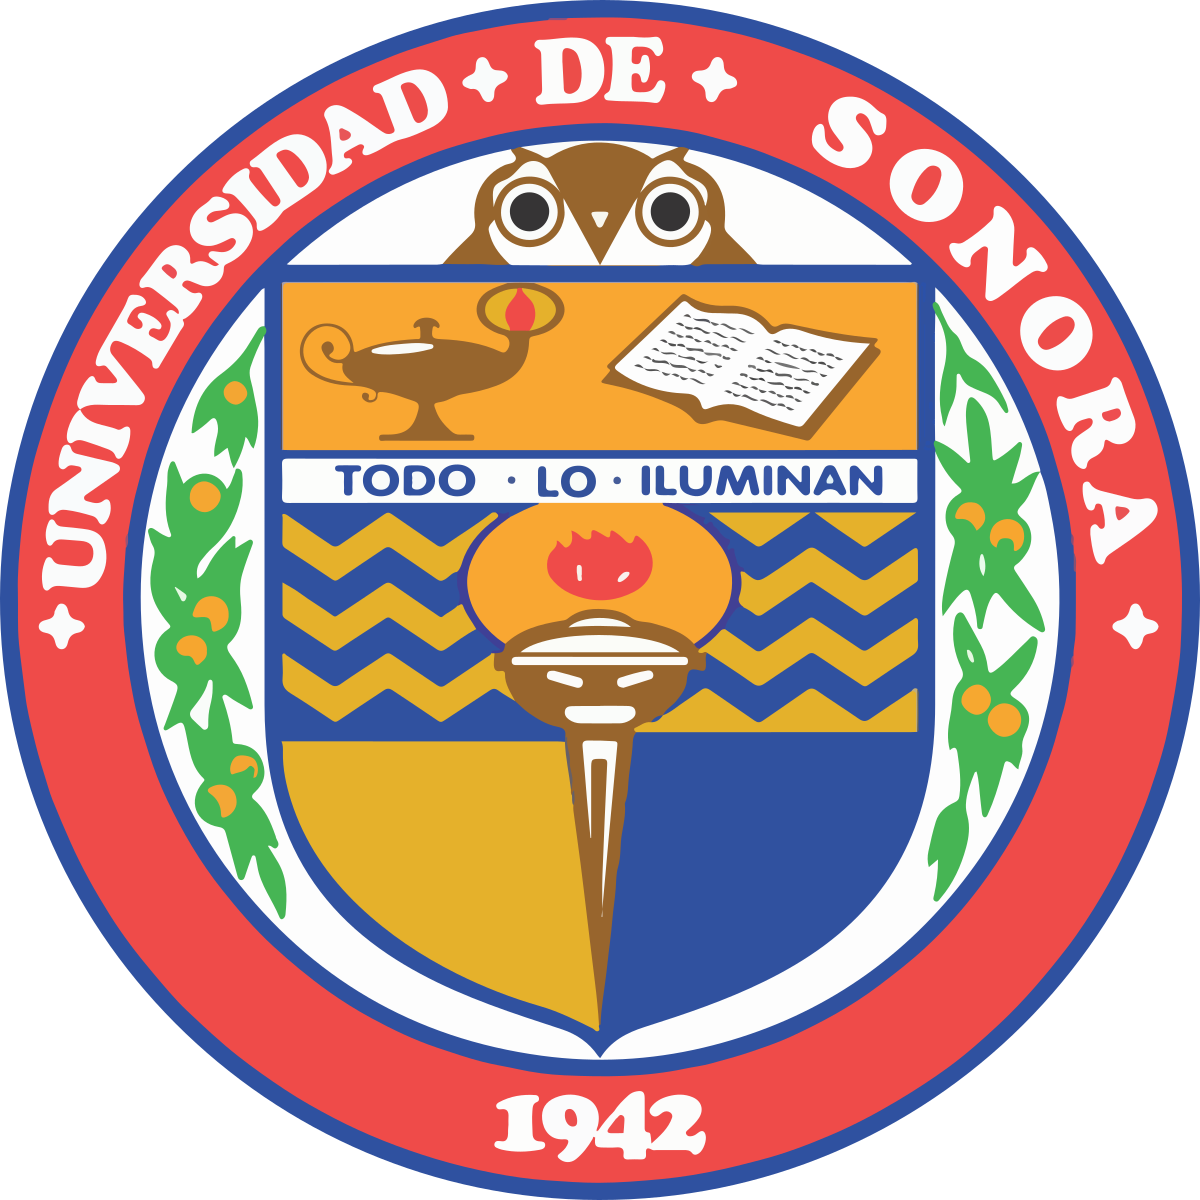 University of Sonora